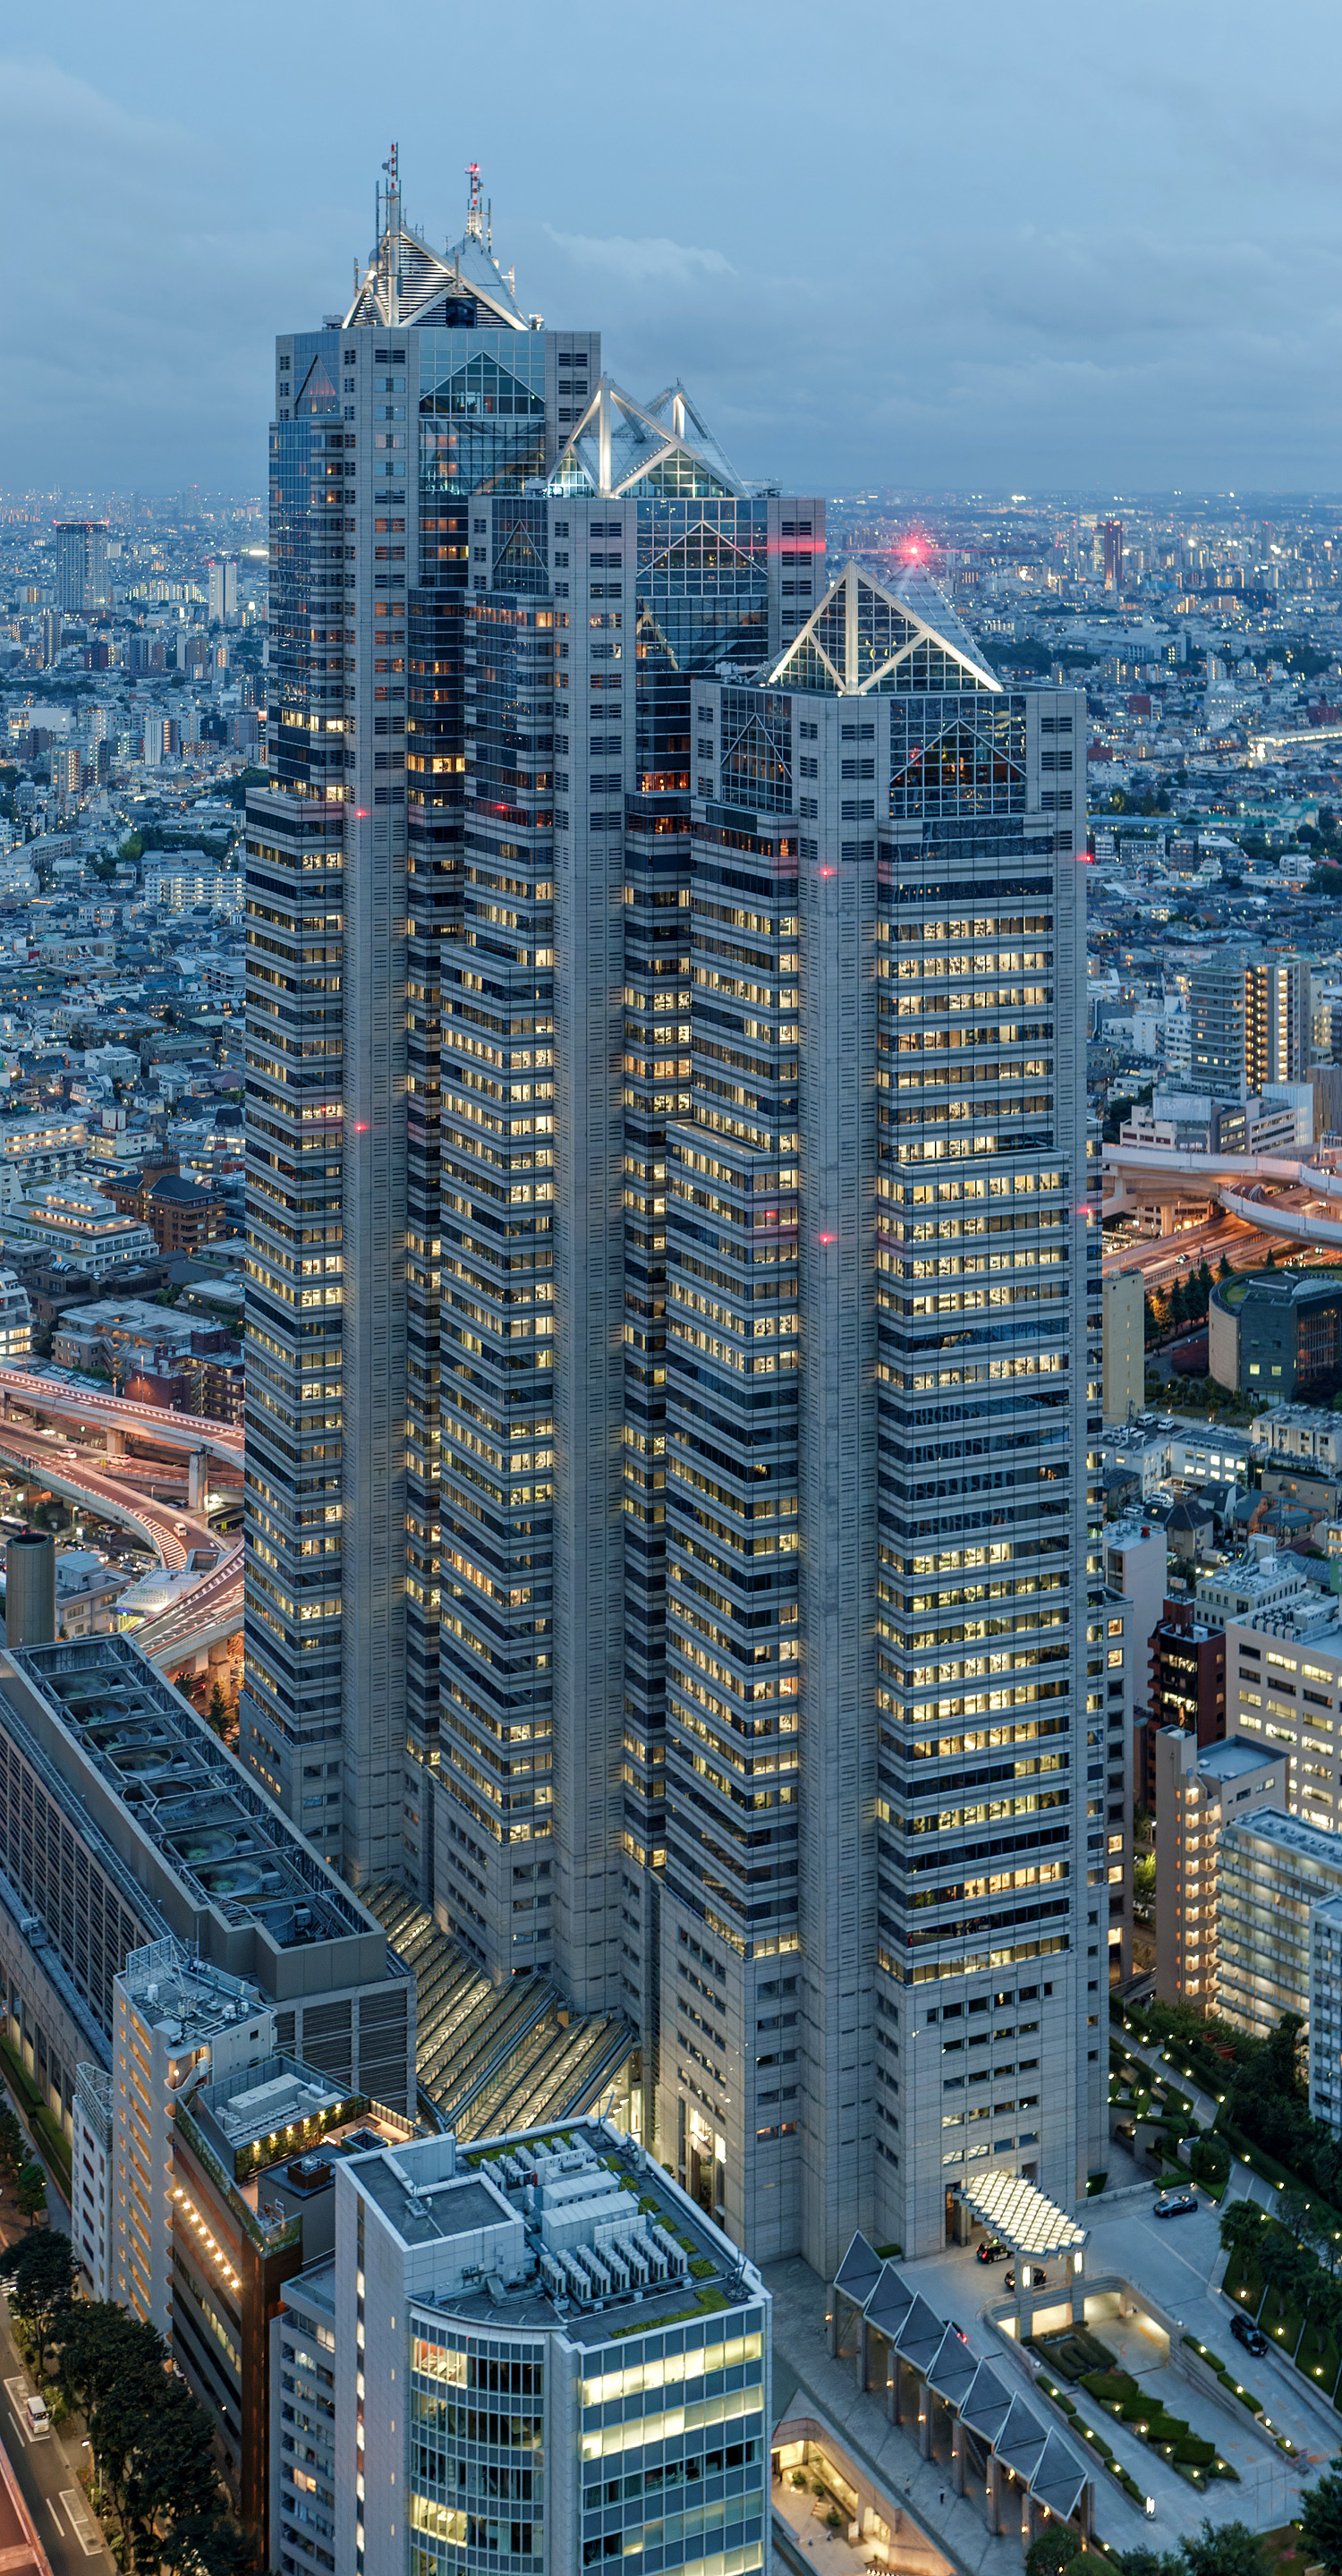 Shinjuku Park Tower, Tokyo - View from Tokyo Metropolitan Government Building. © Mathias Beinling